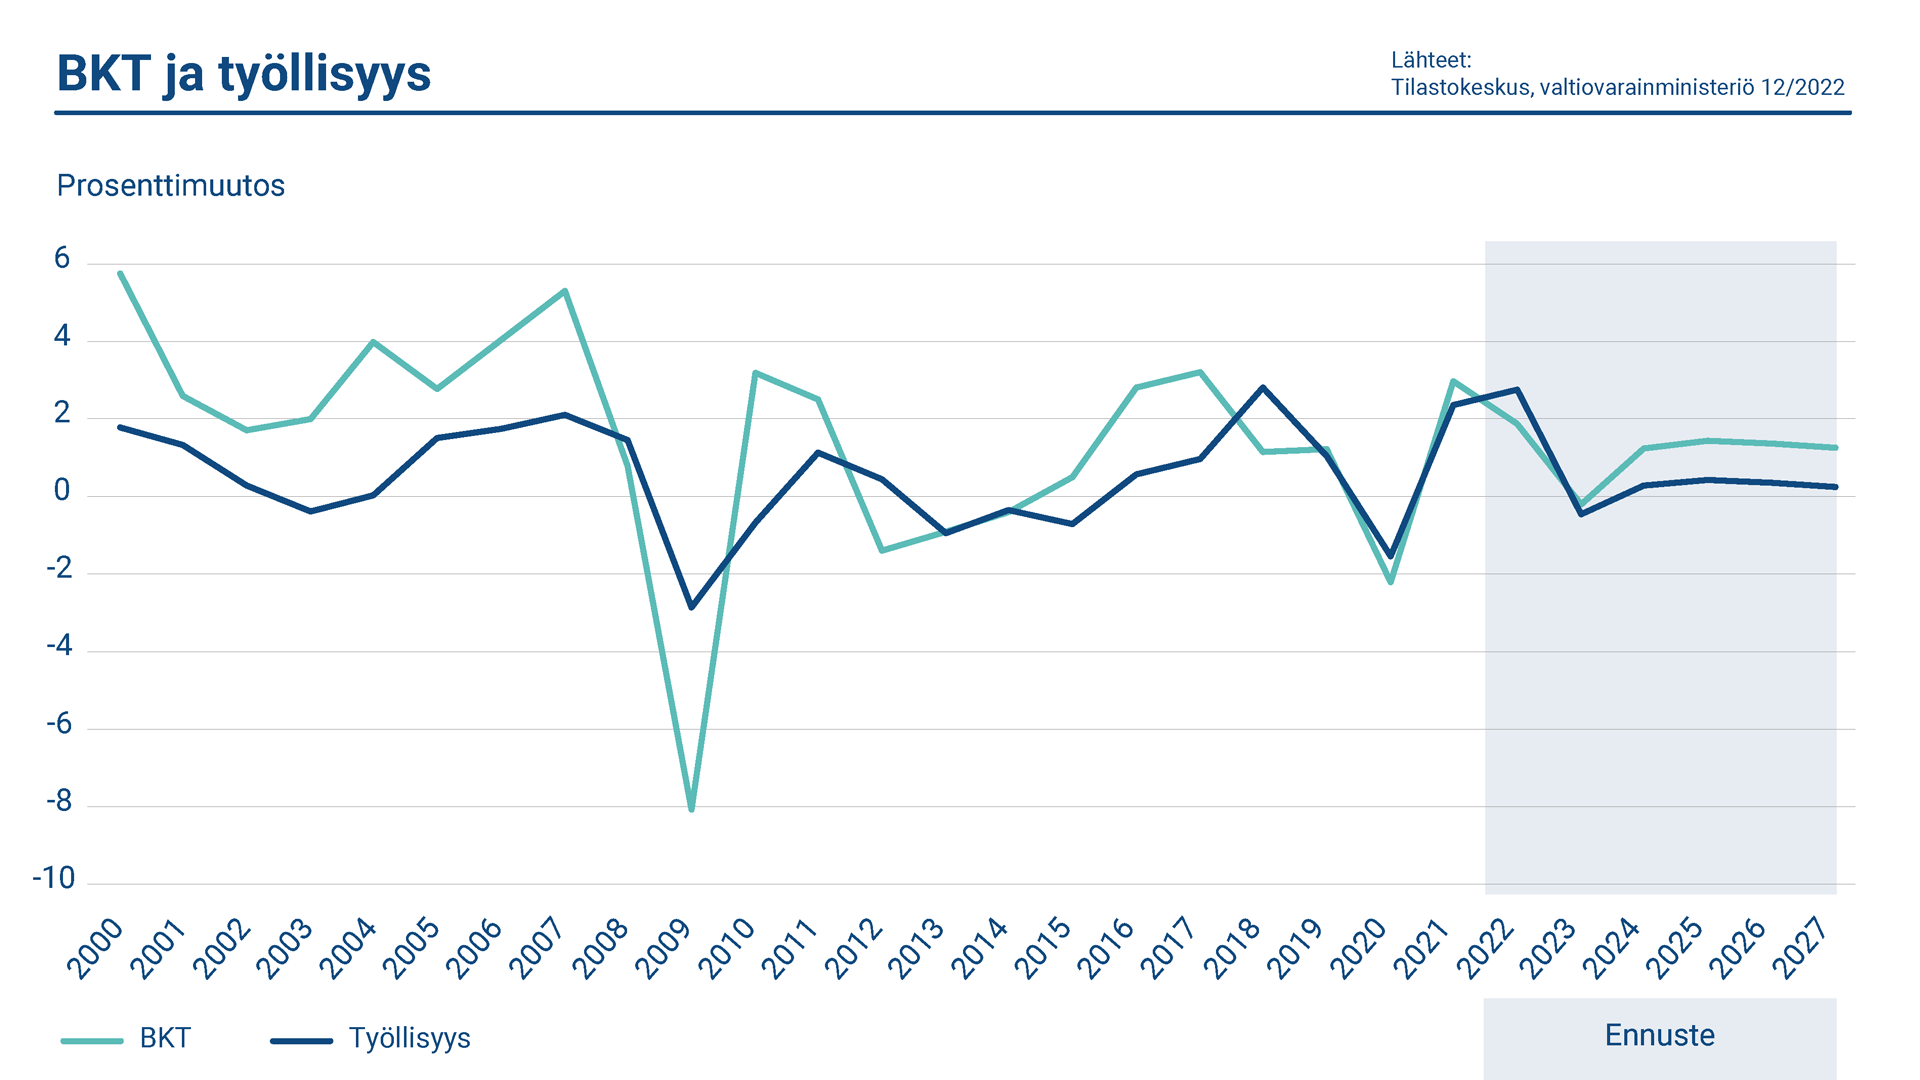 Kaaviossa esitetään tietoja Suomen bruttokansantuotteen ja työllisyyden vuotuisista muutoksista. Vuonna 2022 bruttokansantuote laski ja työllisyysaste nousi.